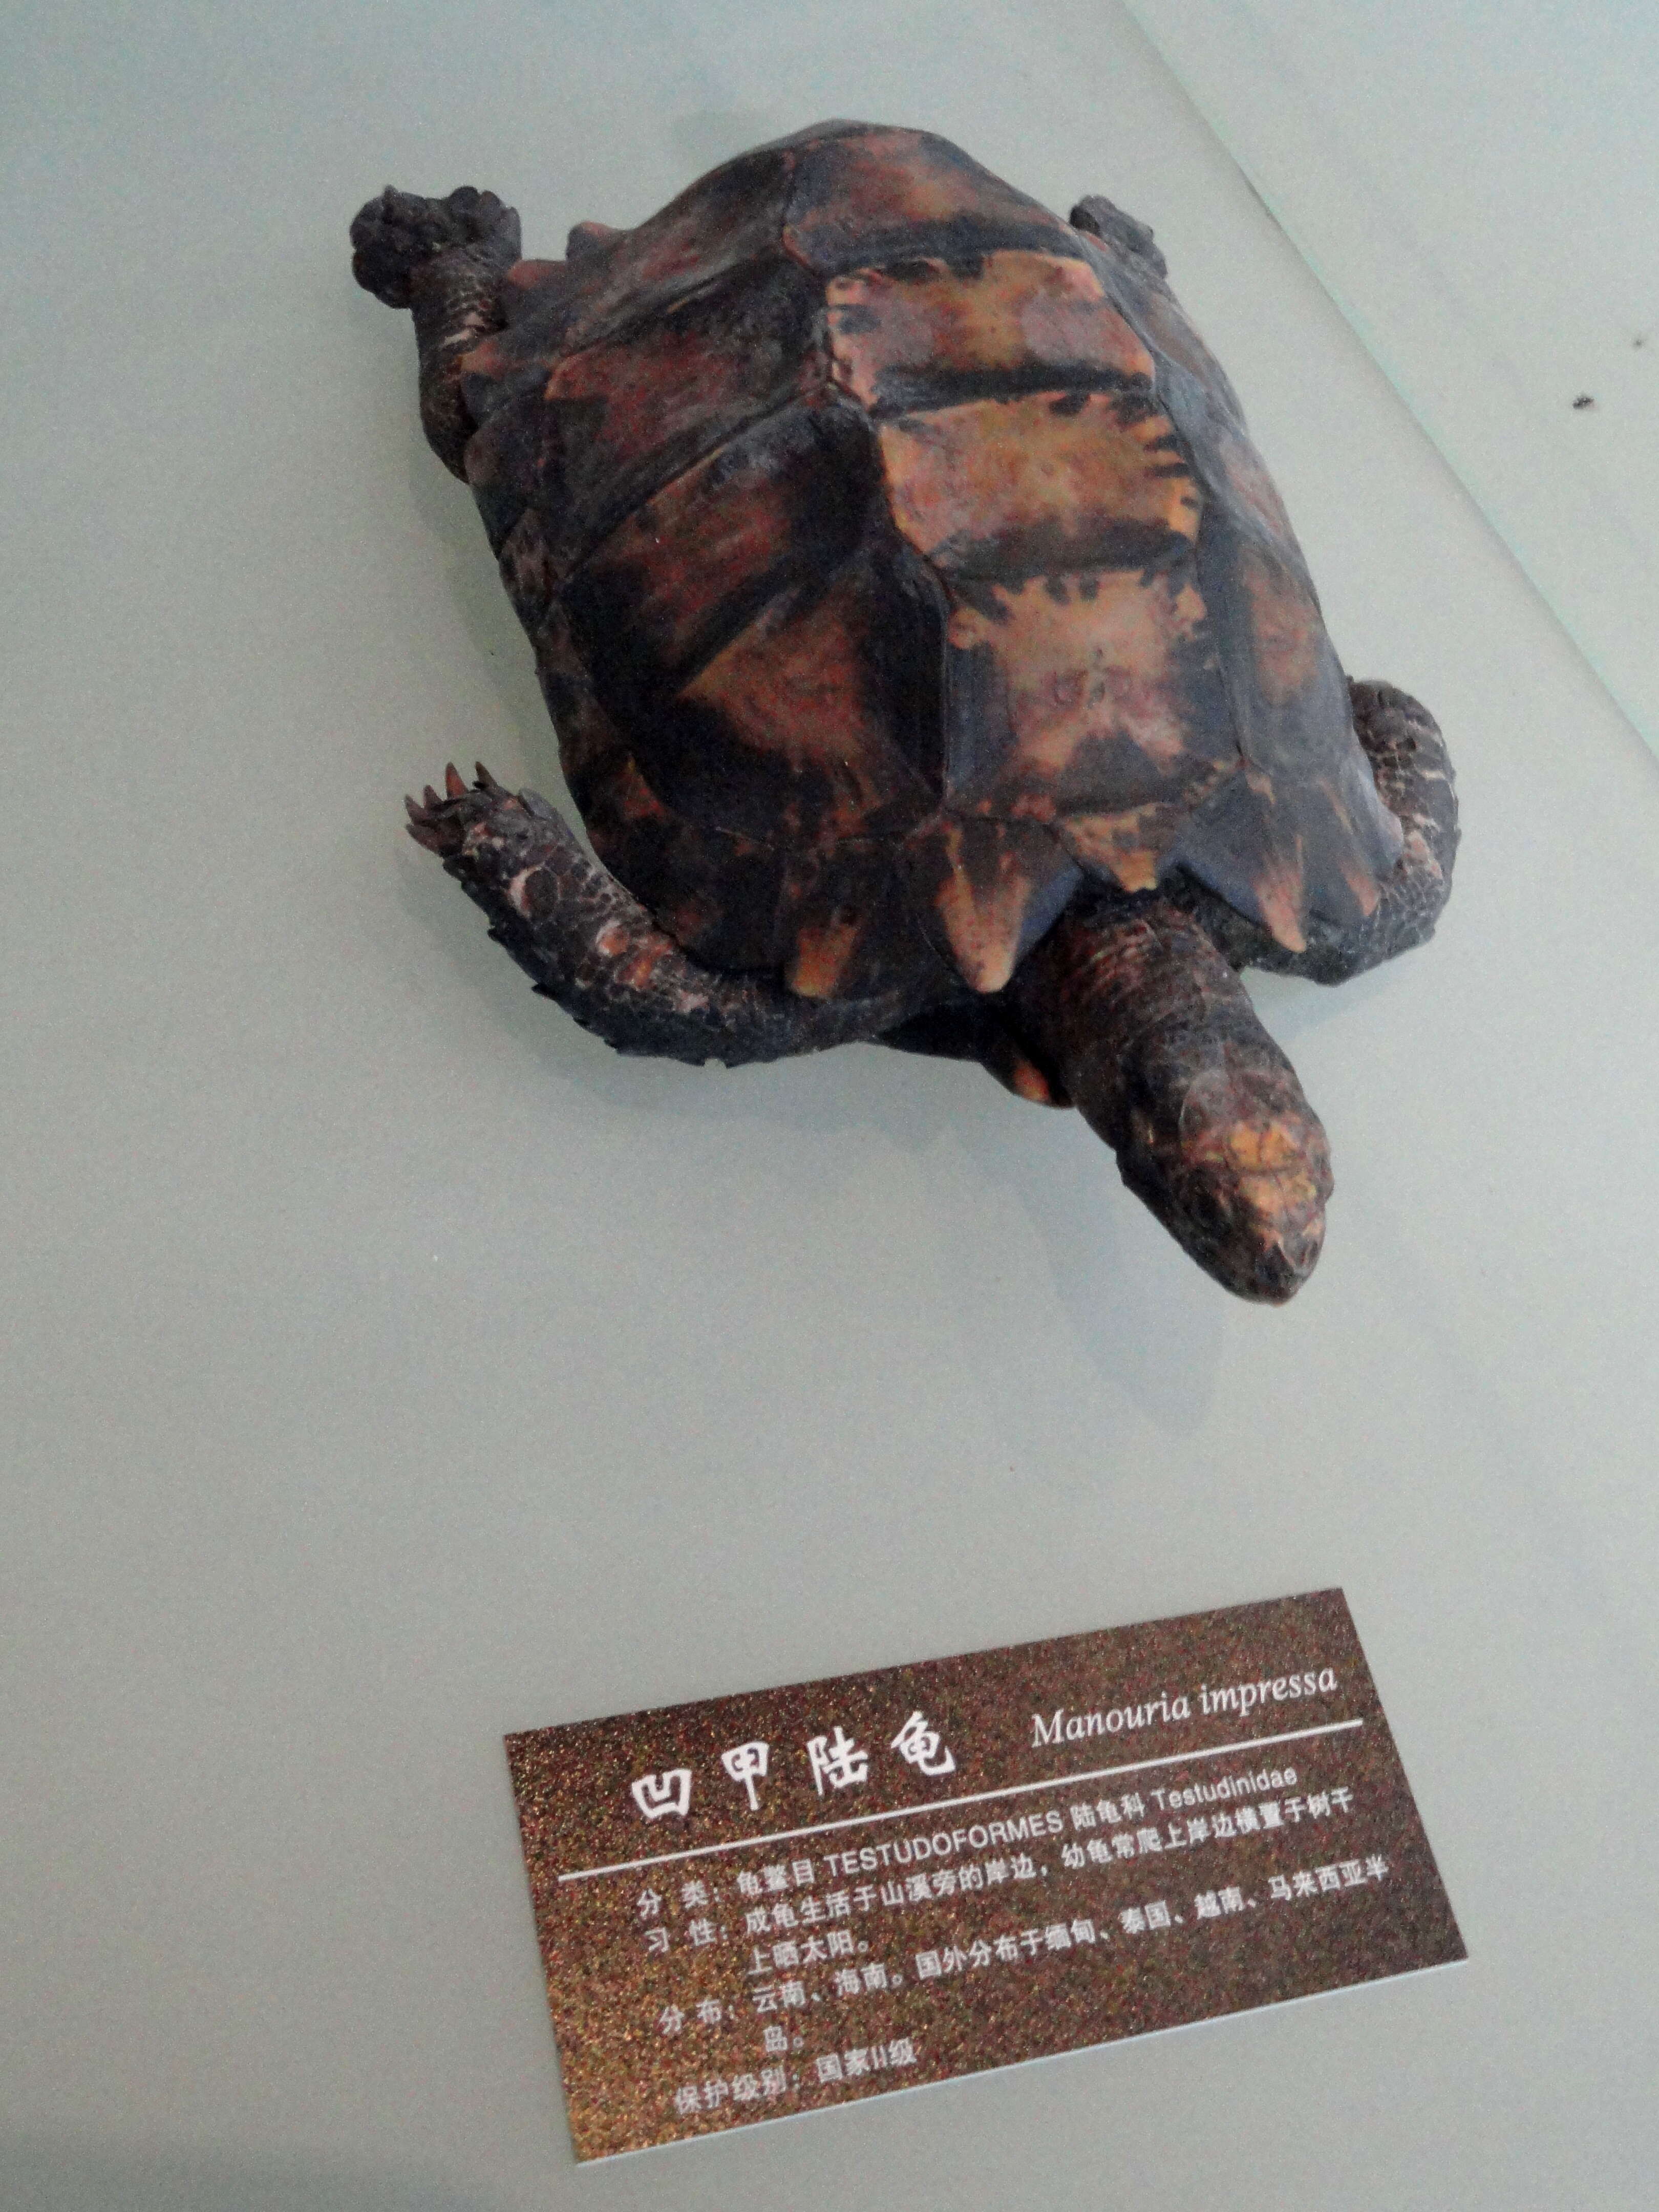 Image of Impressed Tortoise